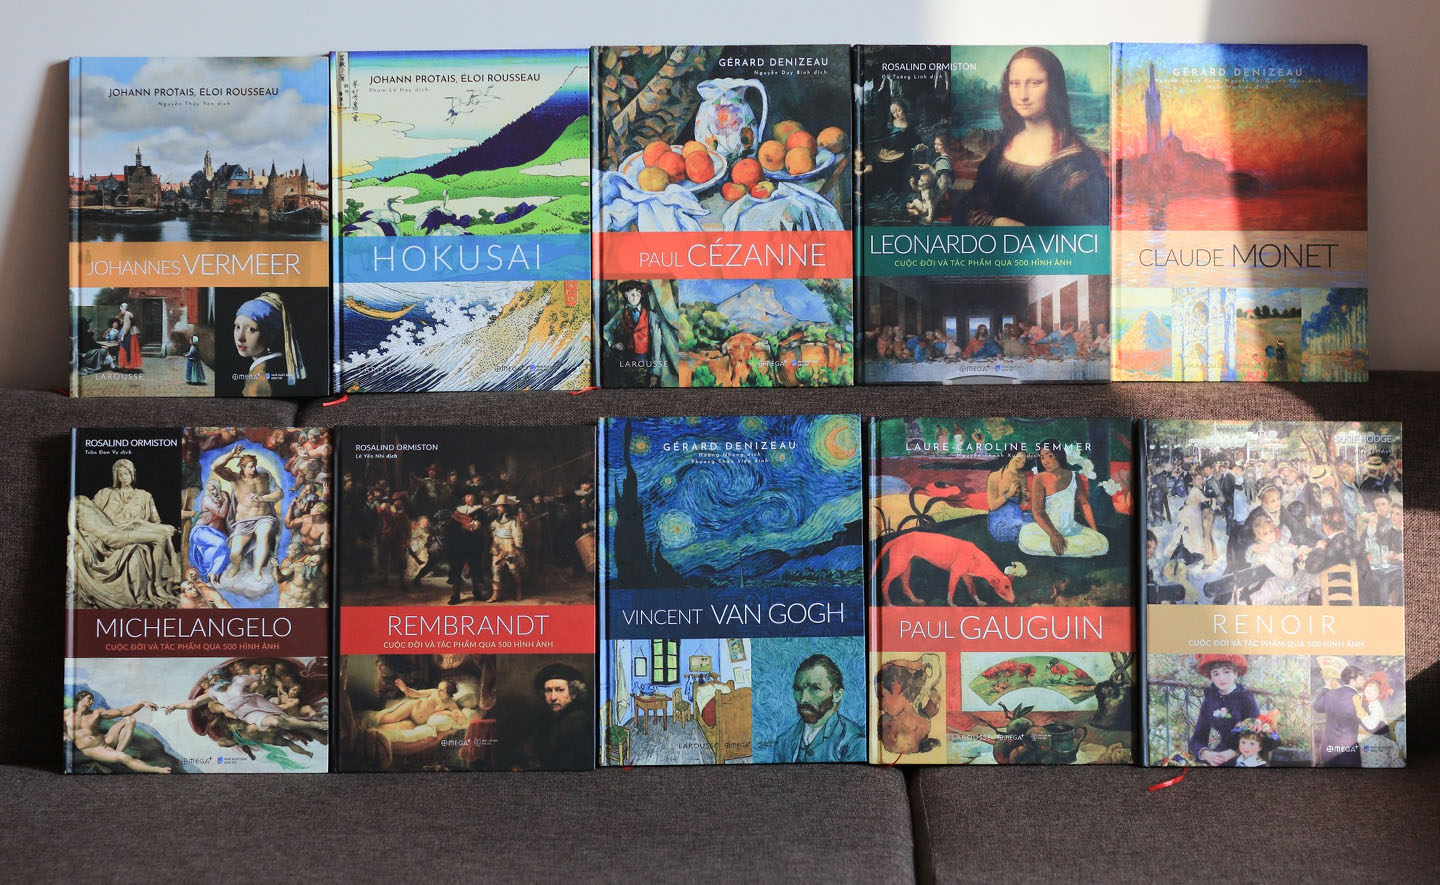 Nắm bắt nghệ thuật từ Tây sang Đông qua bộ 10 cuốn sách ảnh tuyệt đẹp về các bậc thầy hội họa